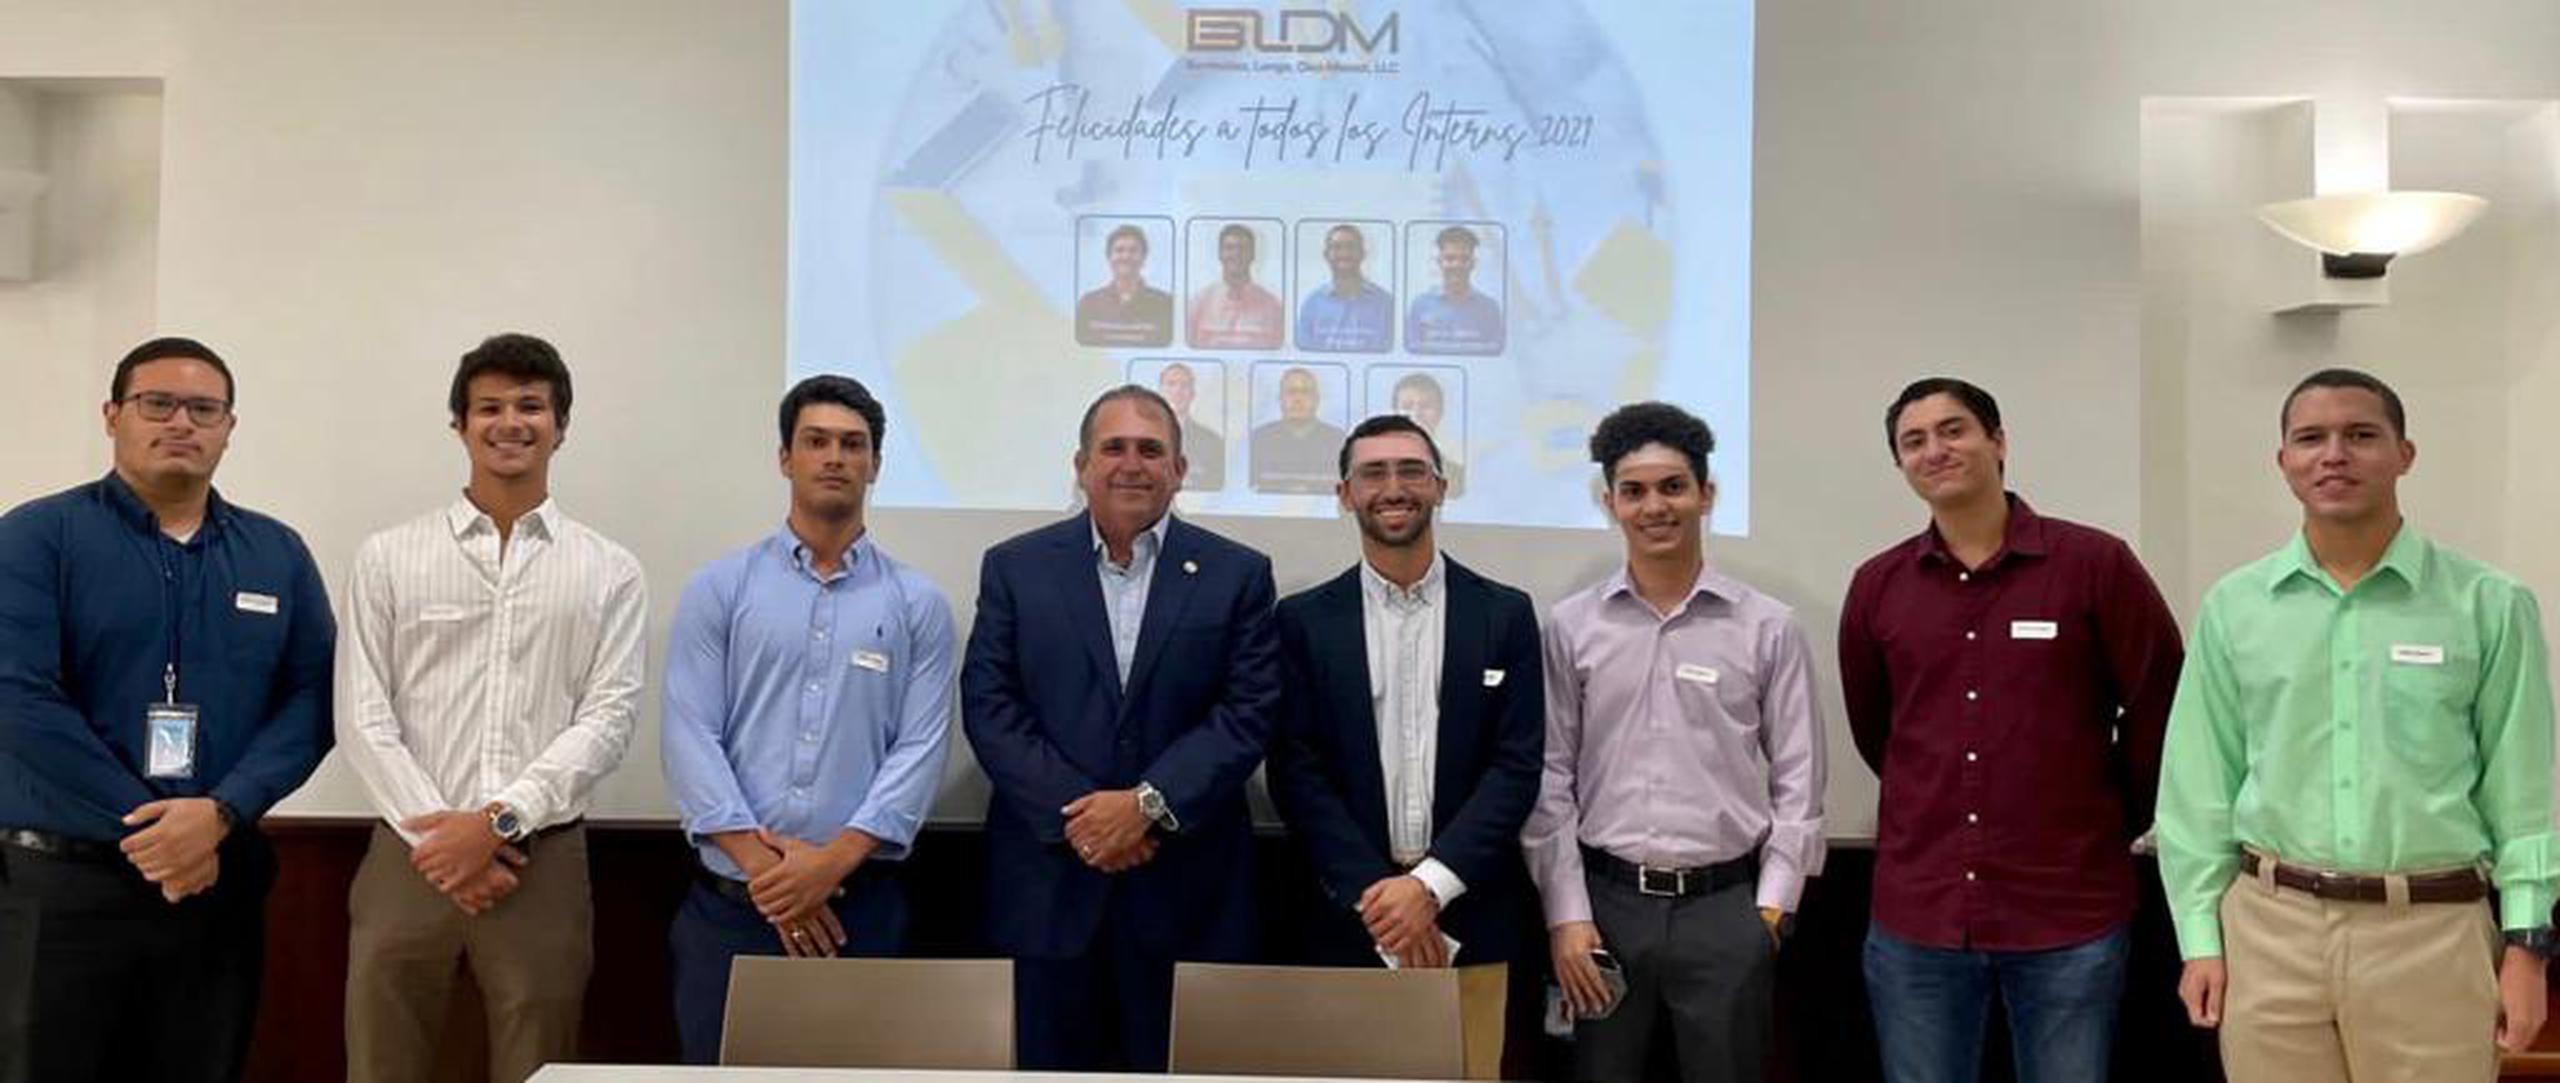 Jóvenes estudiantes de ingeniería, participantes del internado de verano 2021 de BLDM.